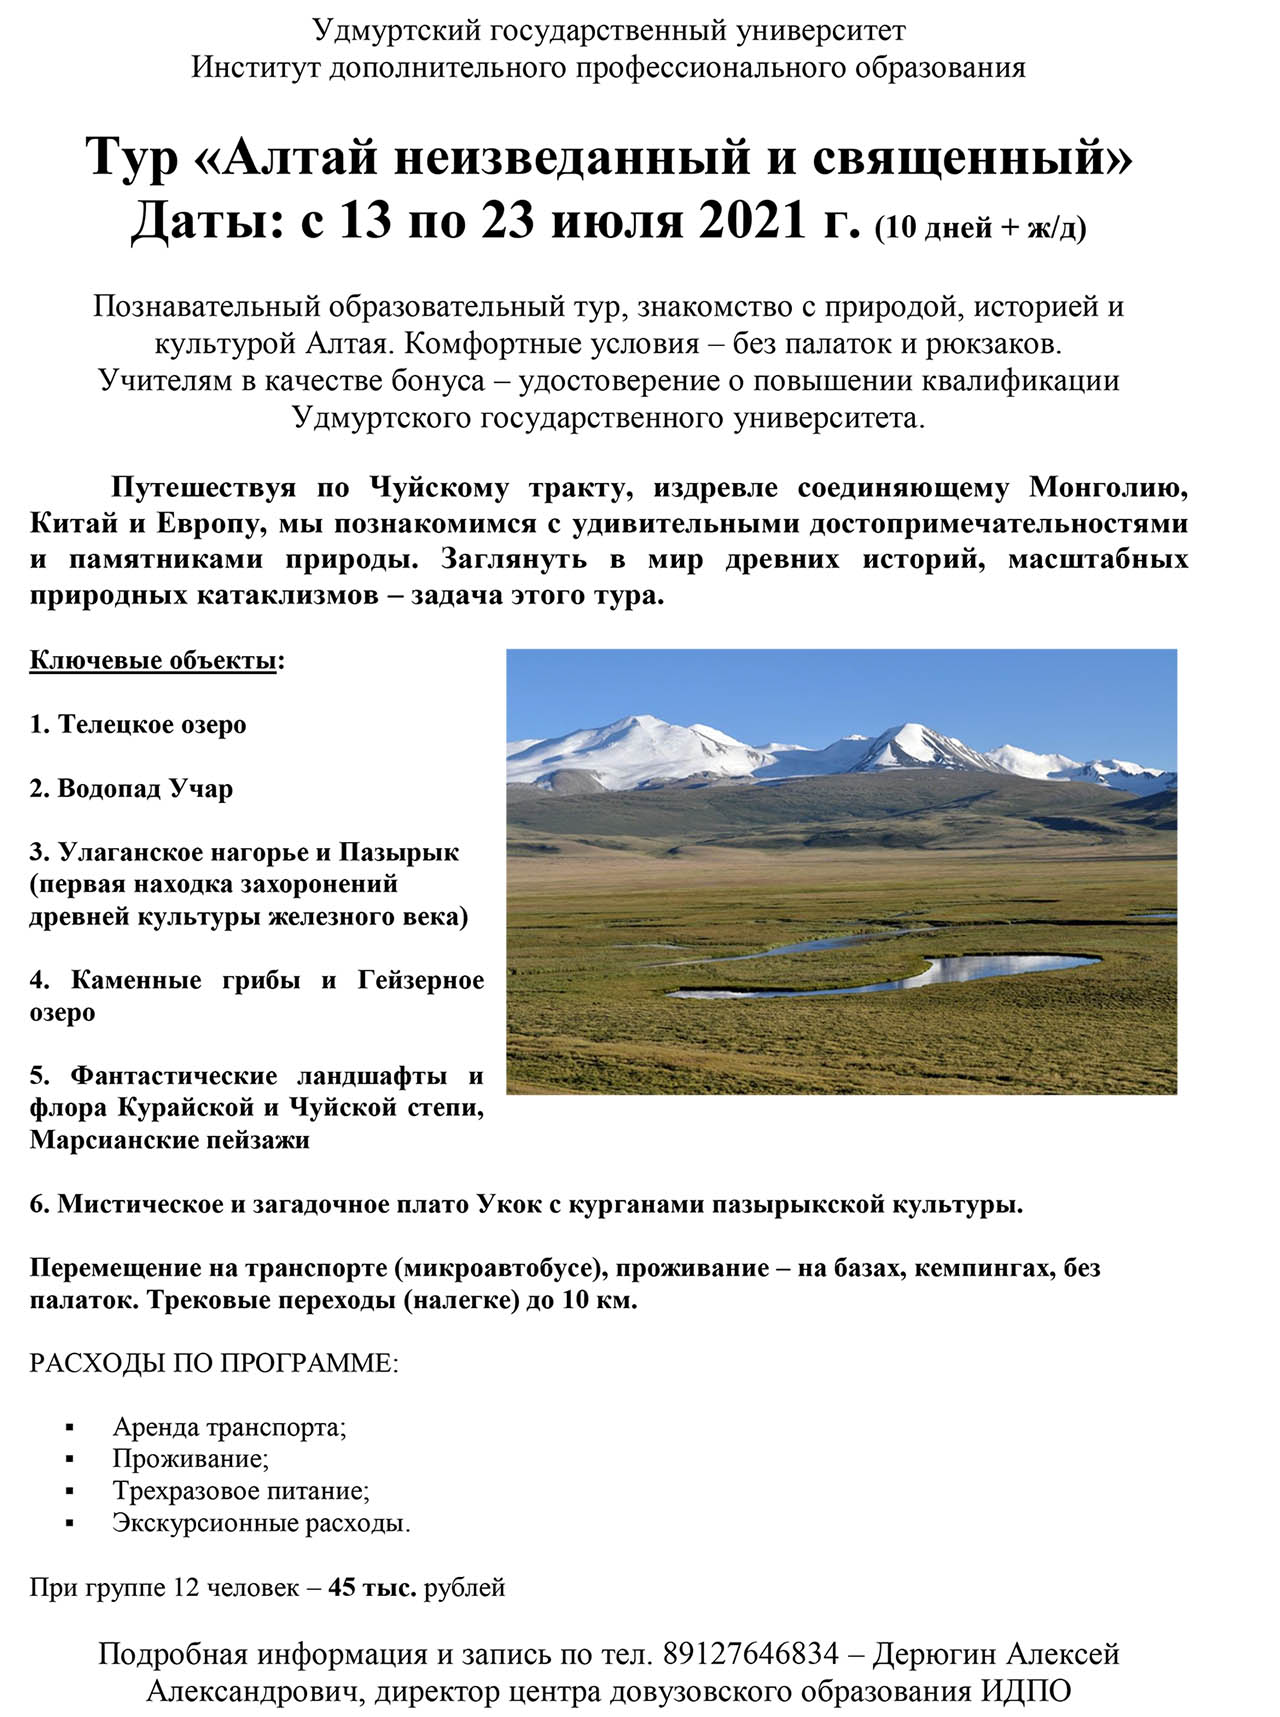 Познавательный образовательный тур «Алтай неизведанный и священный»